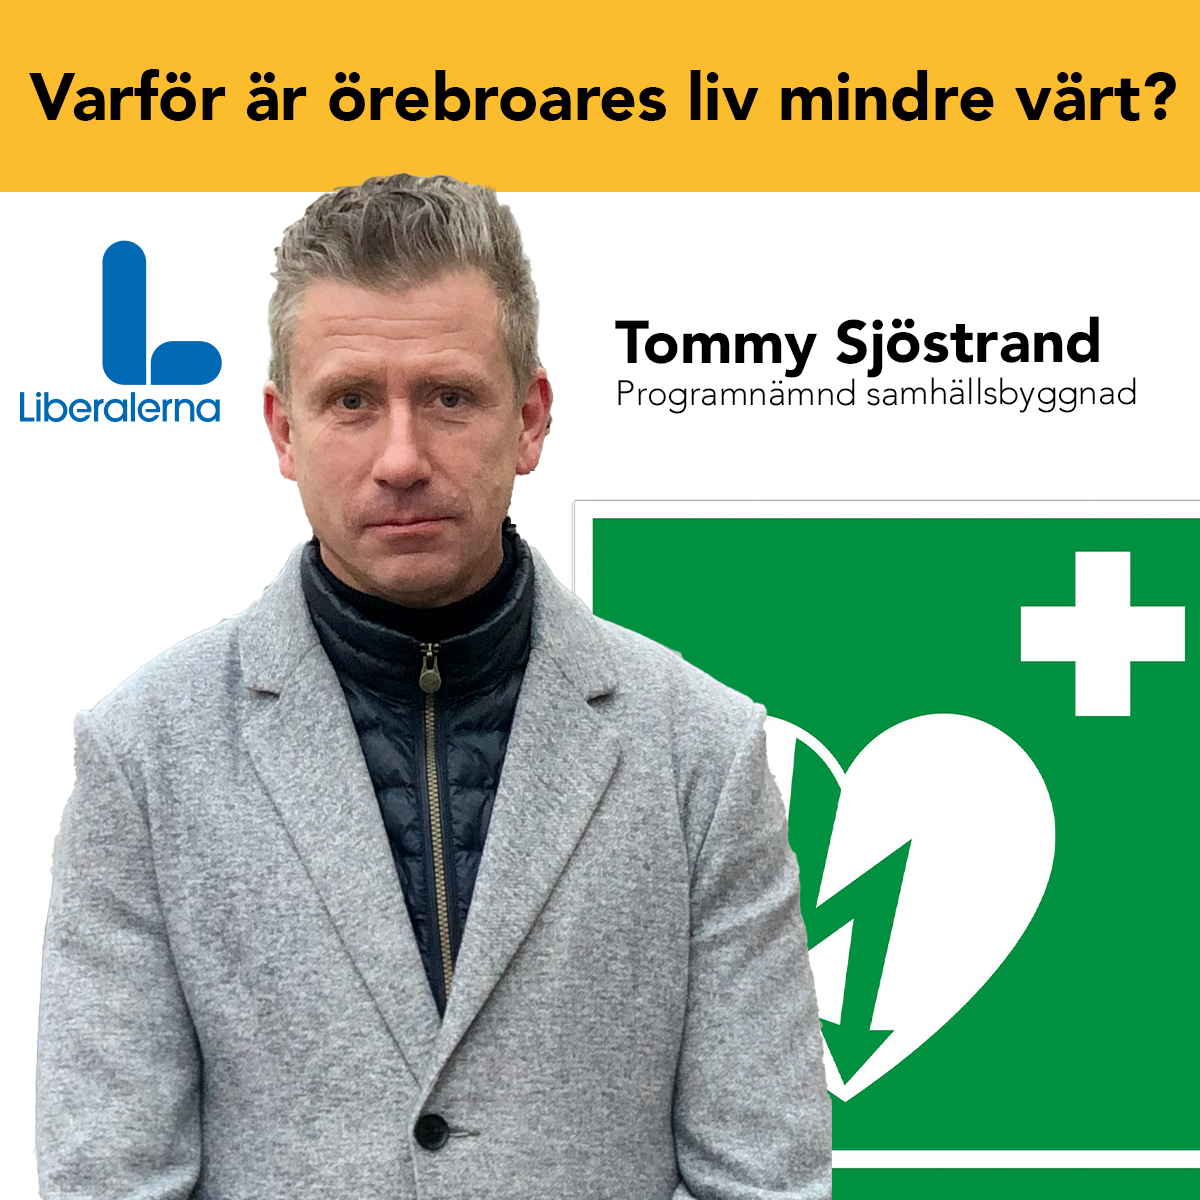 Tommy Sjöstrand